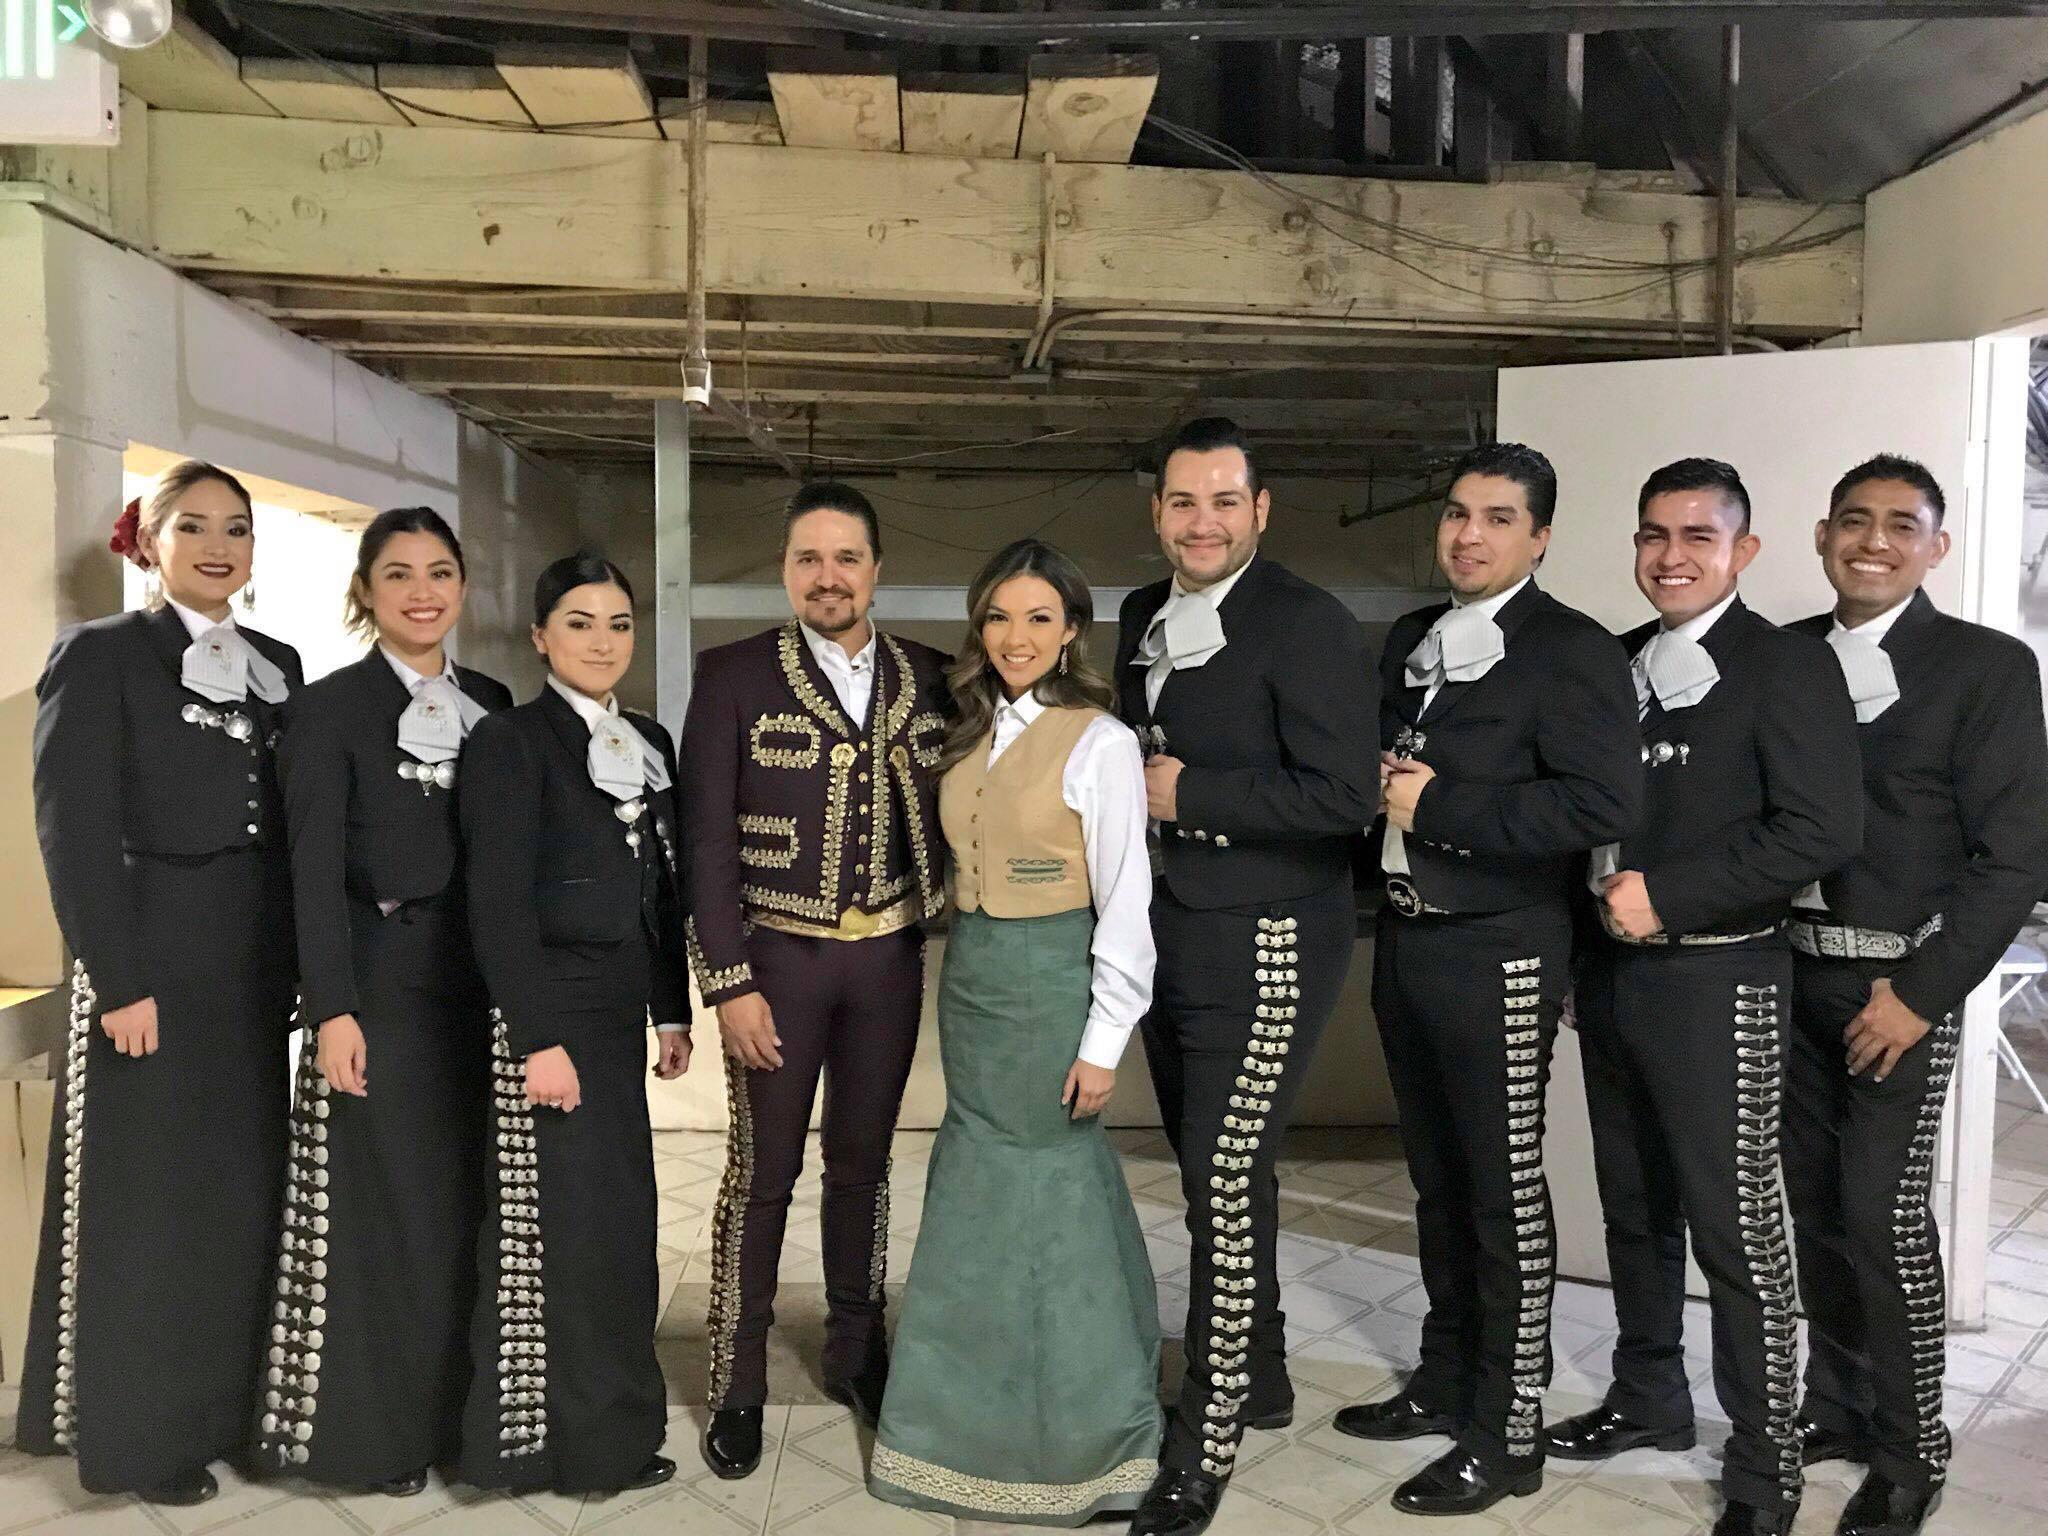 Mariachi Orgullo de Mexico